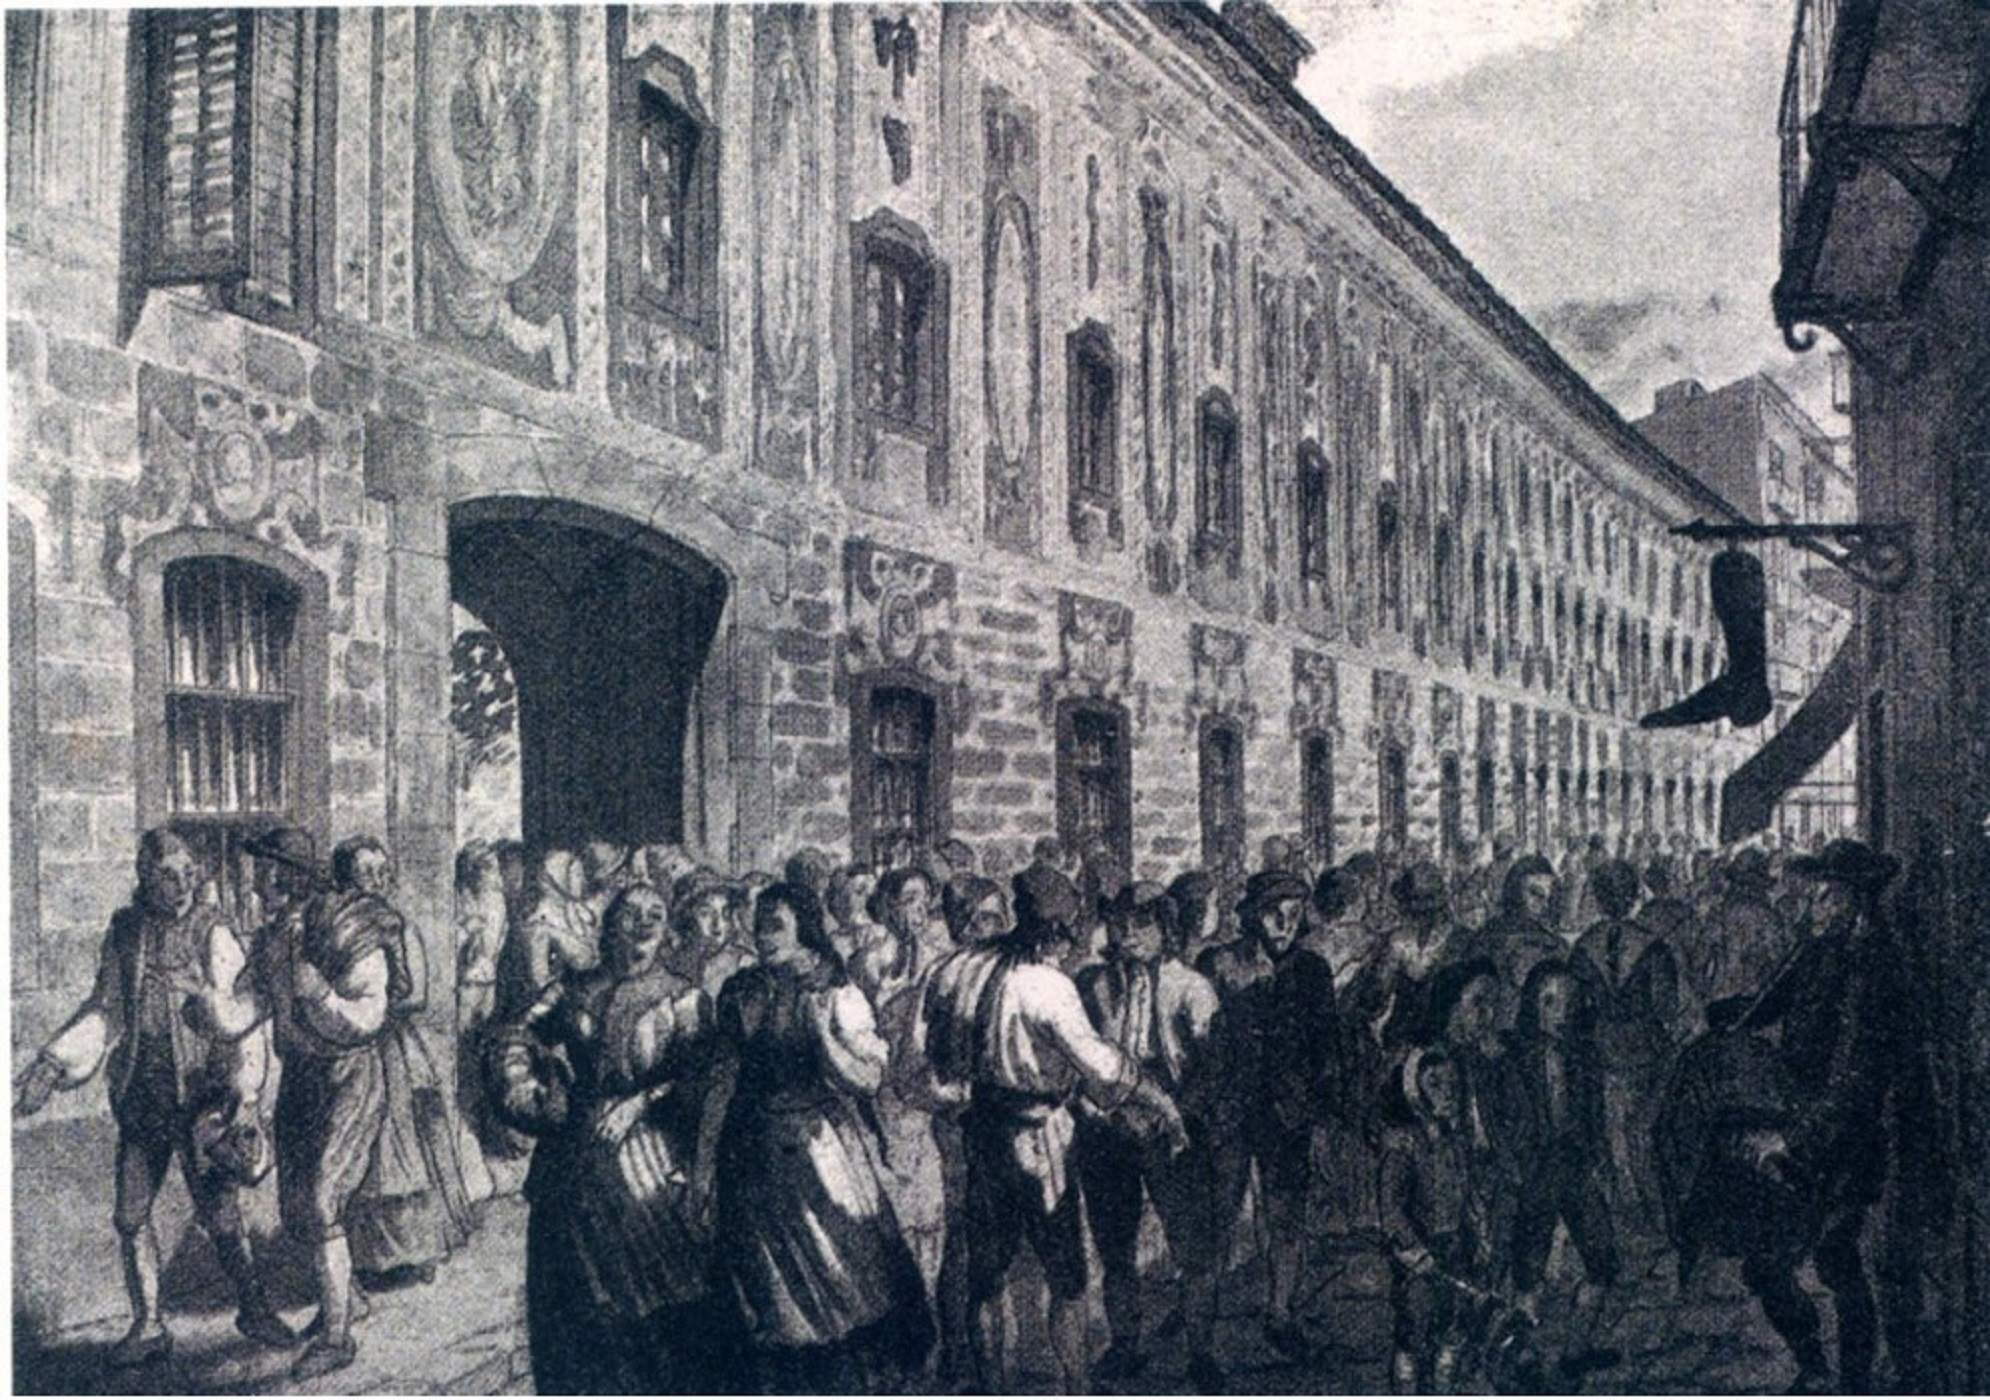 Les primeres fàbriques de Barcelona